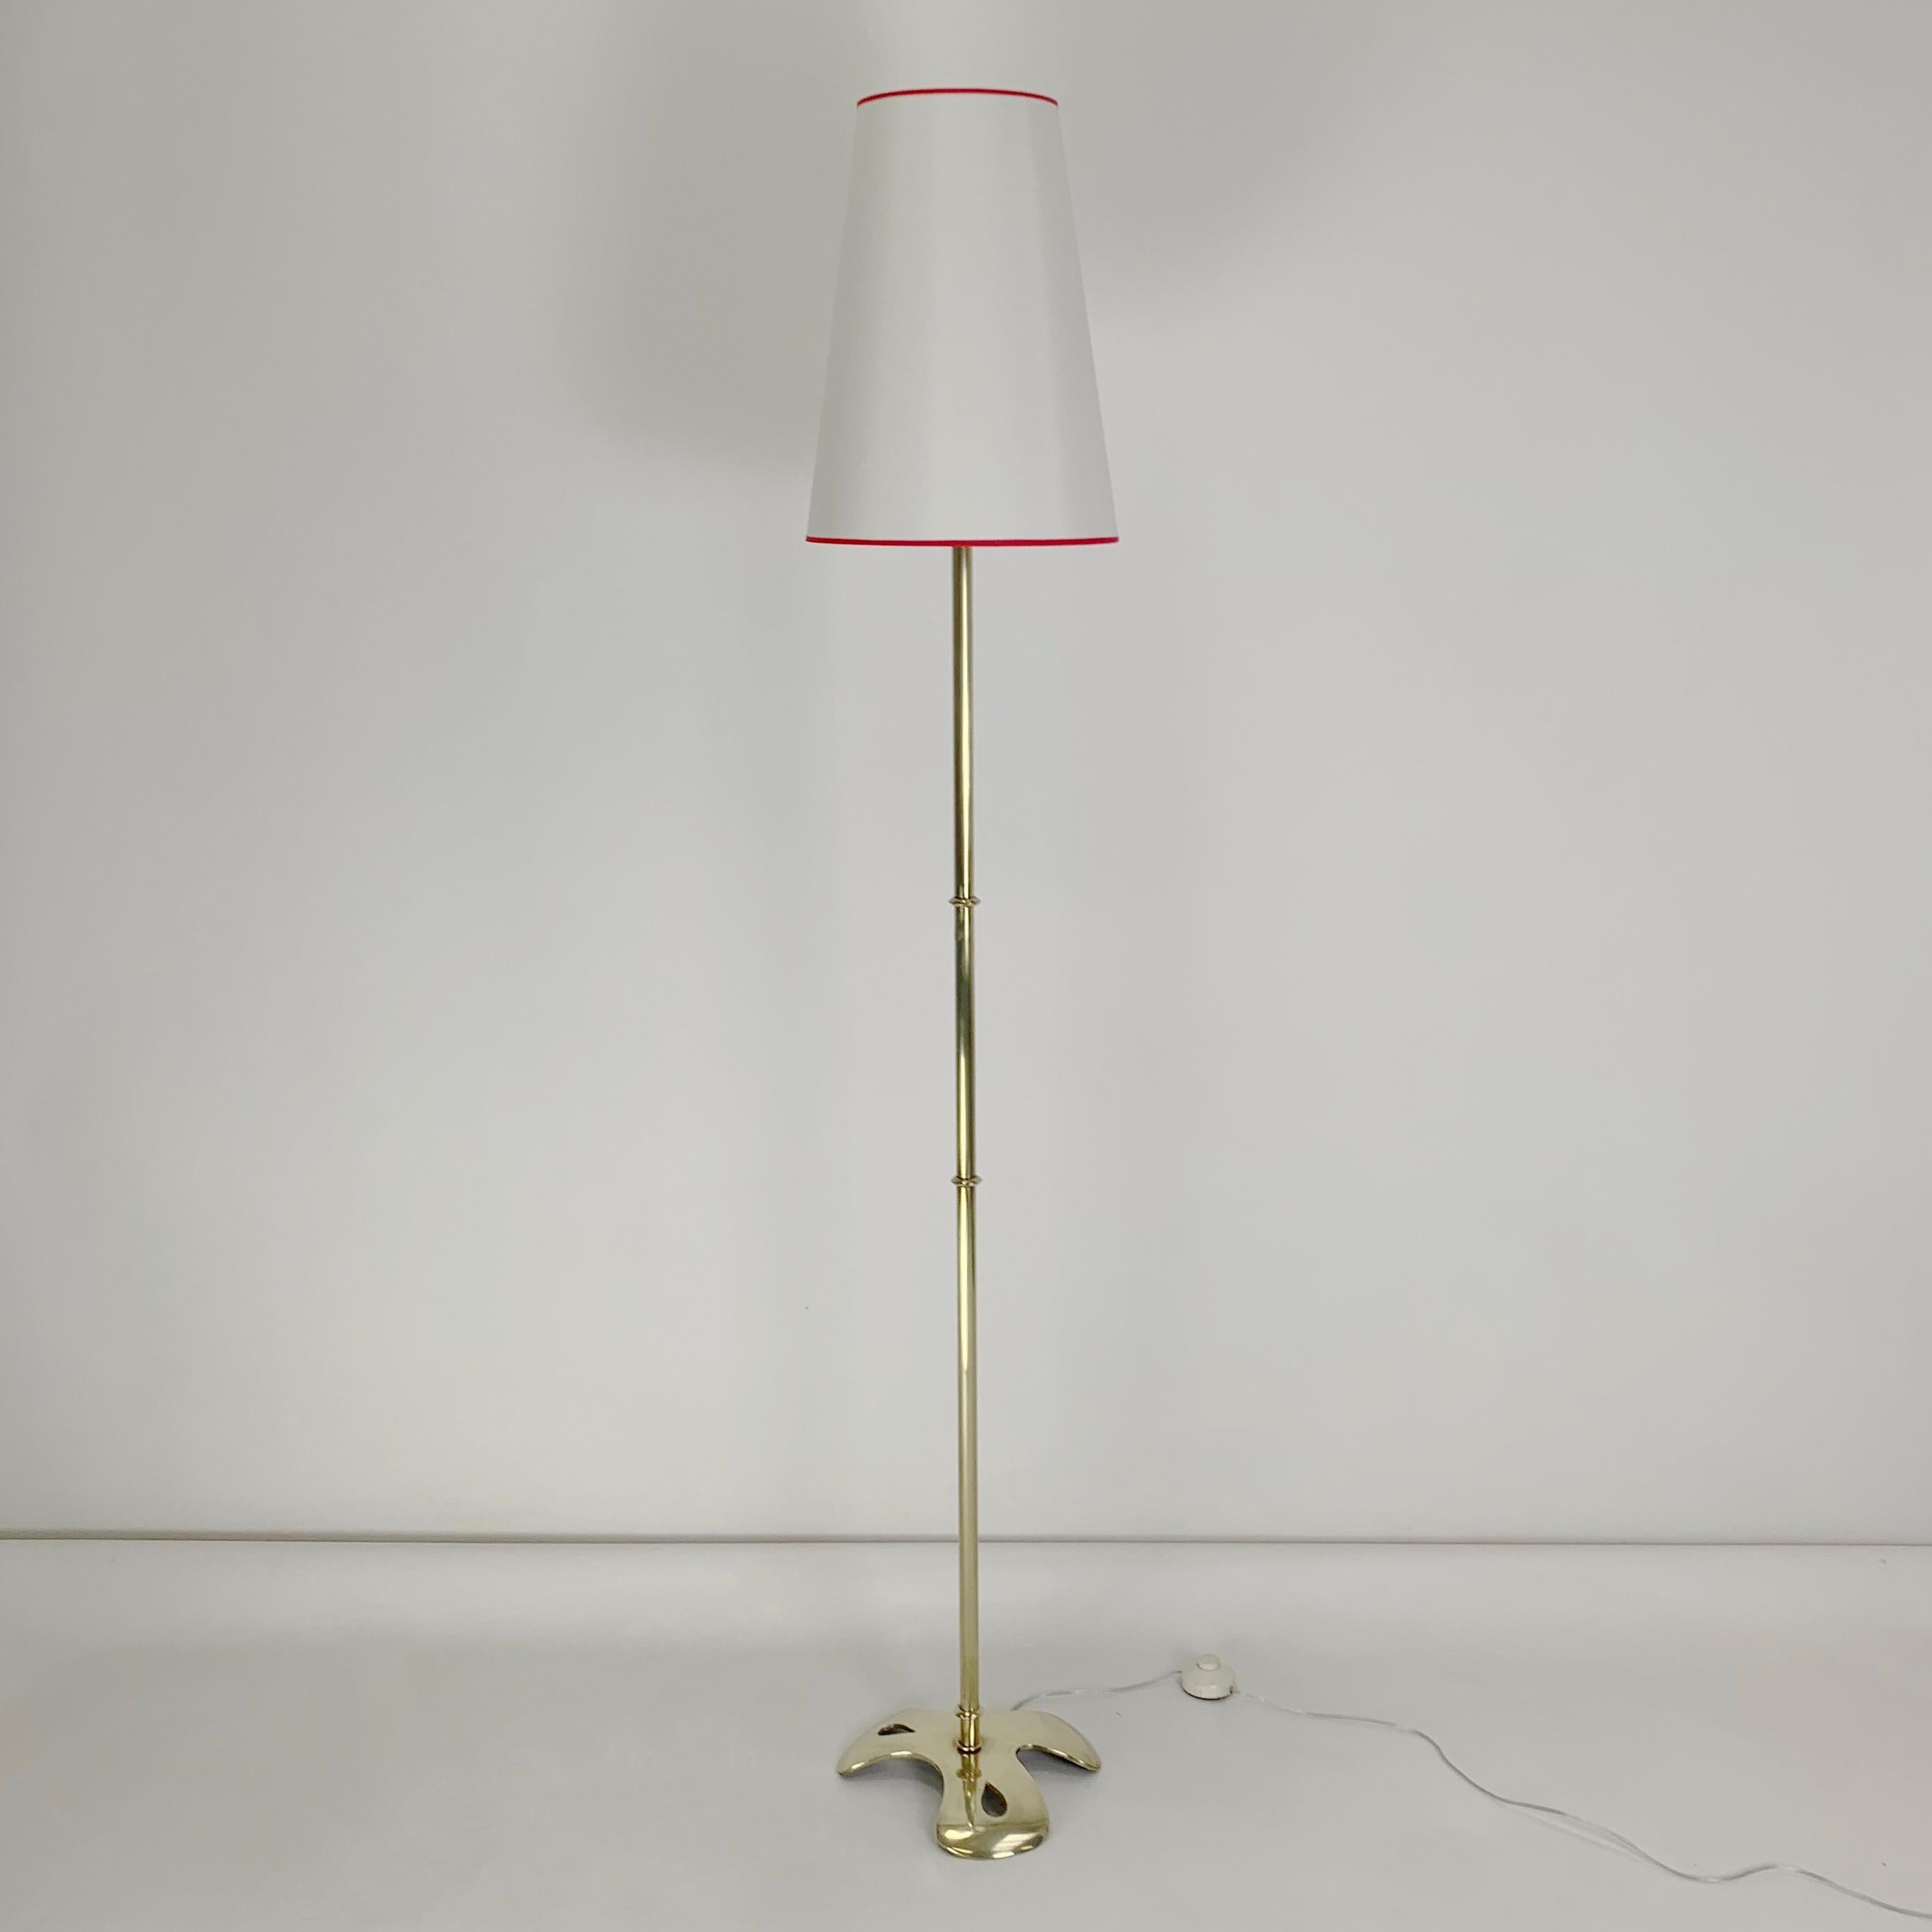 Rare modèle de lampadaire Scarpa, circa 1960, France.
Signé sur la base Scarpa.
Un lampadaire très chic avec un design de base intéressant.
Laiton poli, abat-jour en tissu neuf.
Recâblé.
Dimensions : 170 cm de hauteur totale, diamètre de la base :